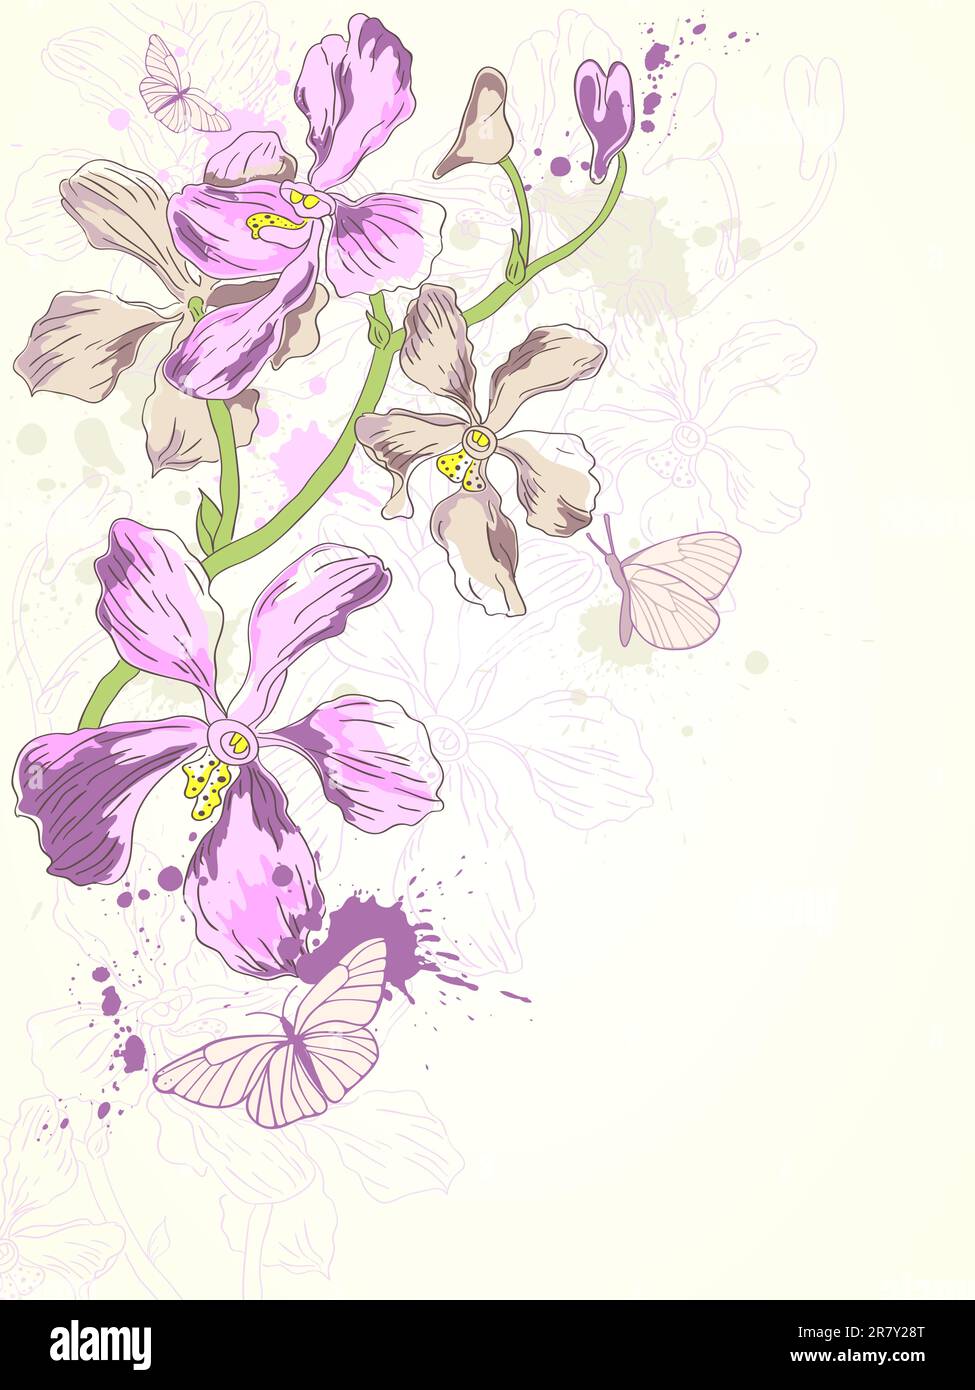 sfondo vettoriale con orchidee viola disegnate a mano Illustrazione Vettoriale